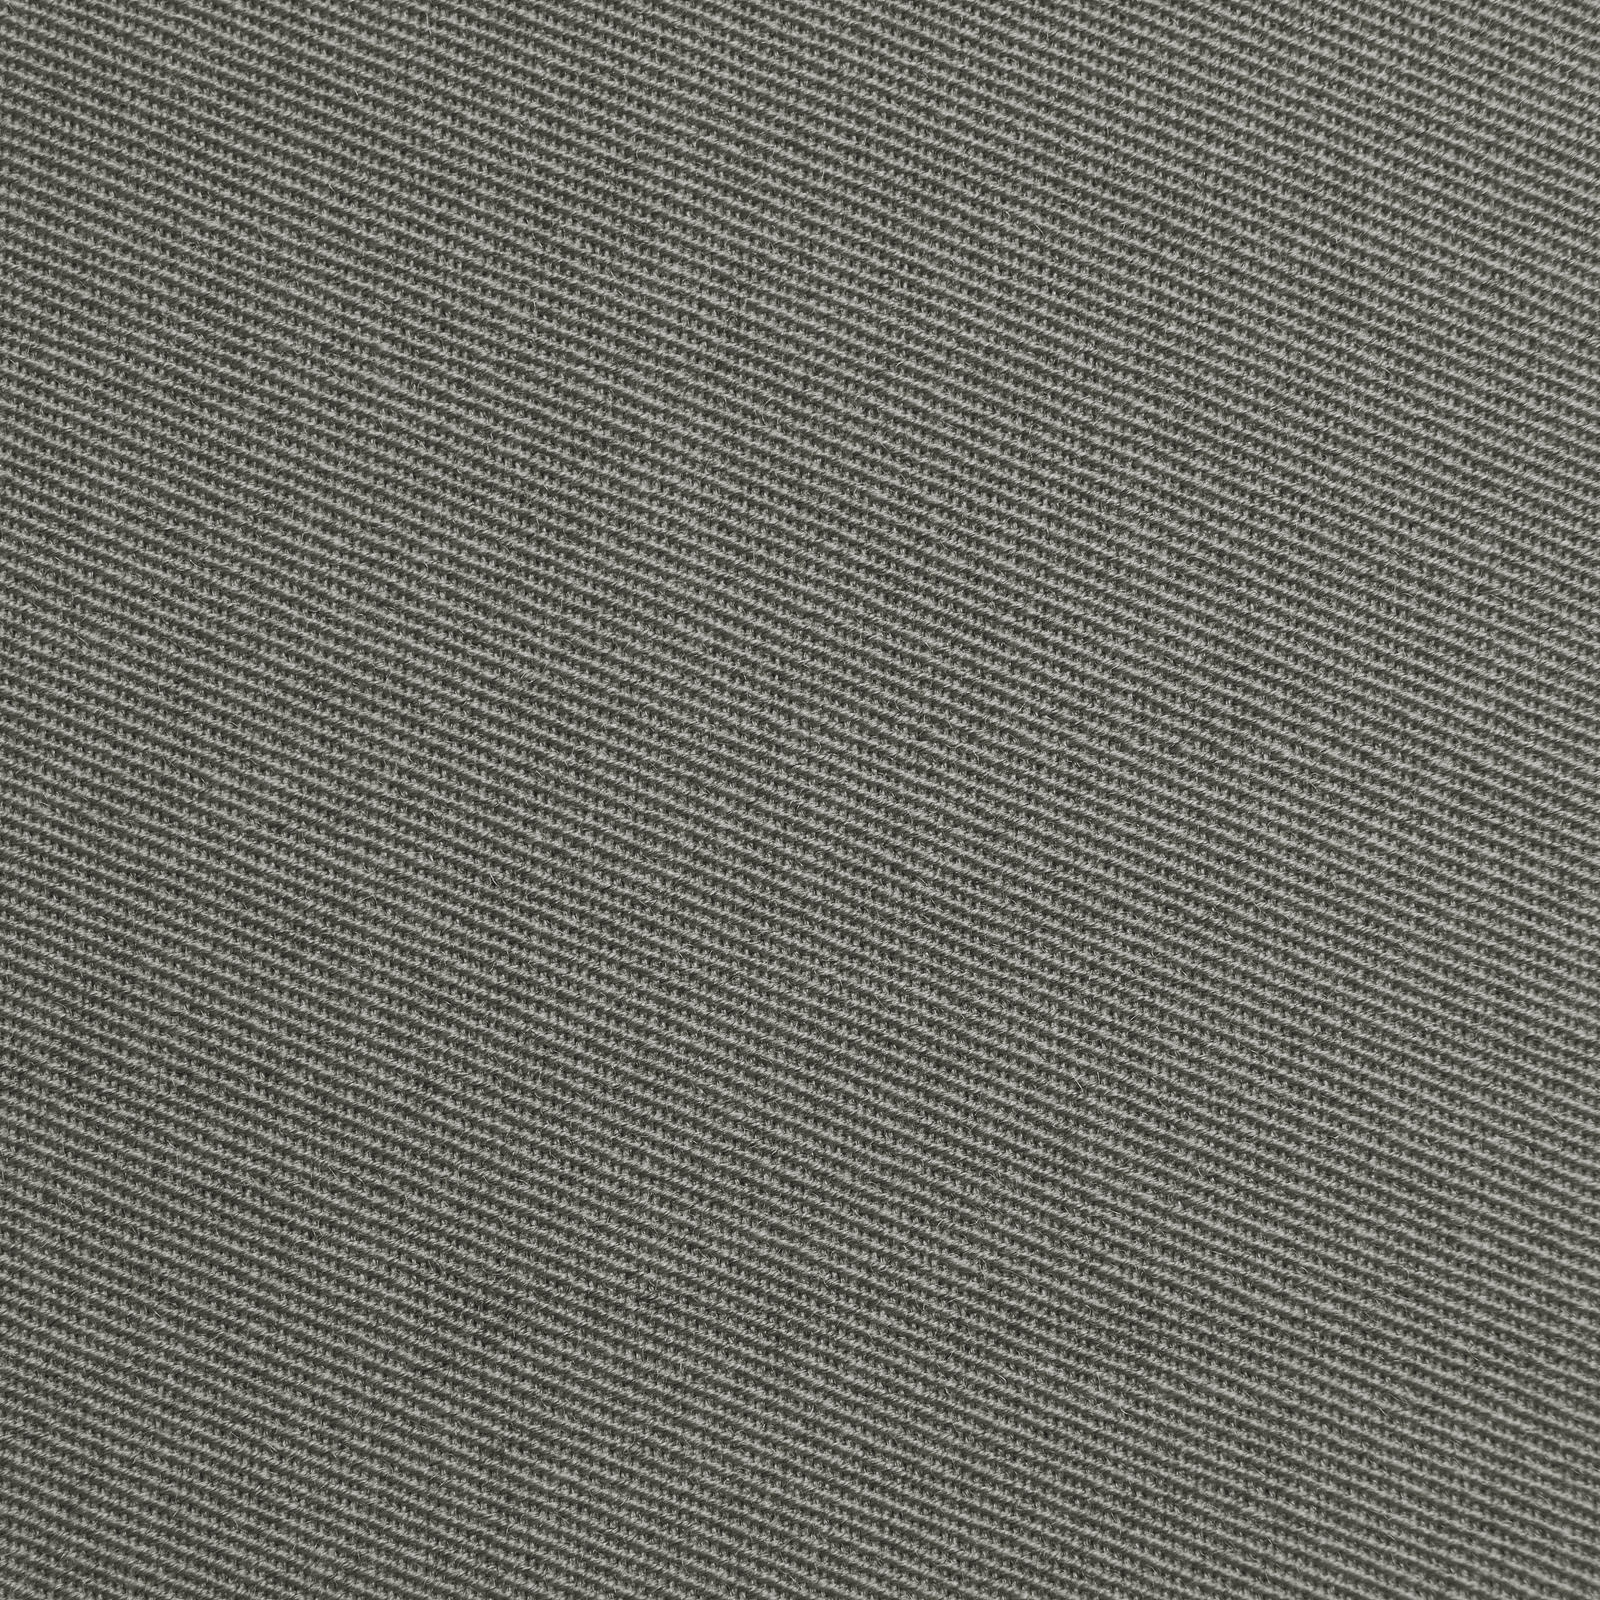 Franziska - Wool cloth / uniform cloth (grey)